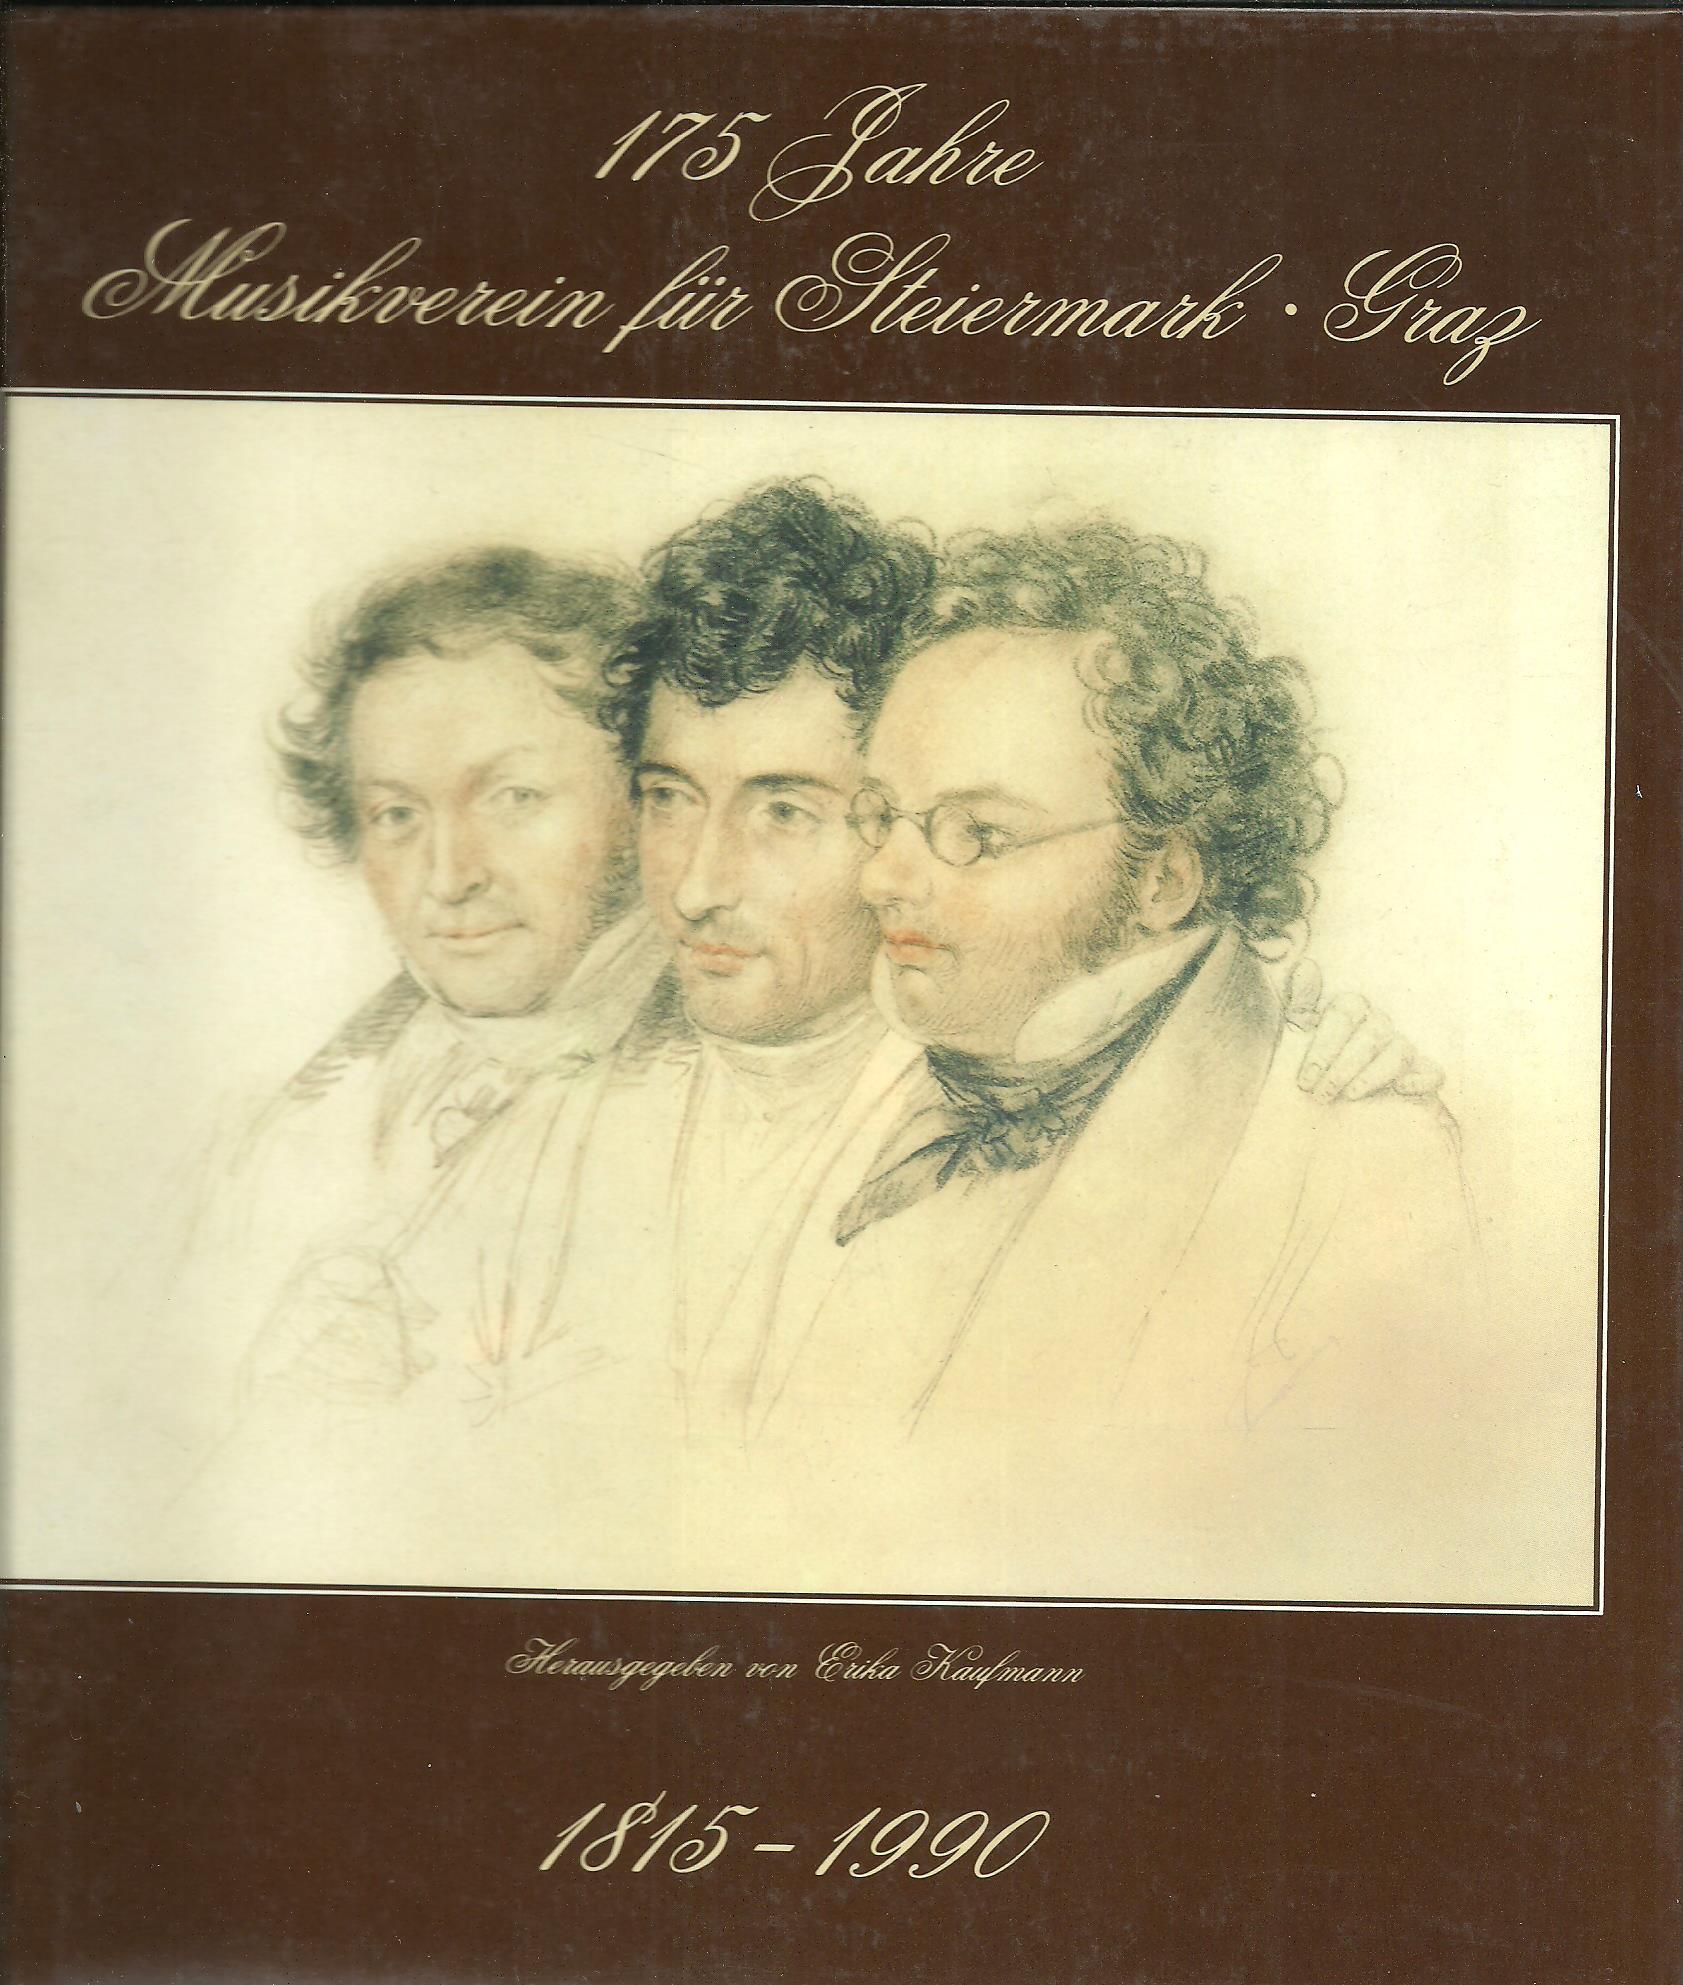 175 Jahre Musikverein für Steiermark